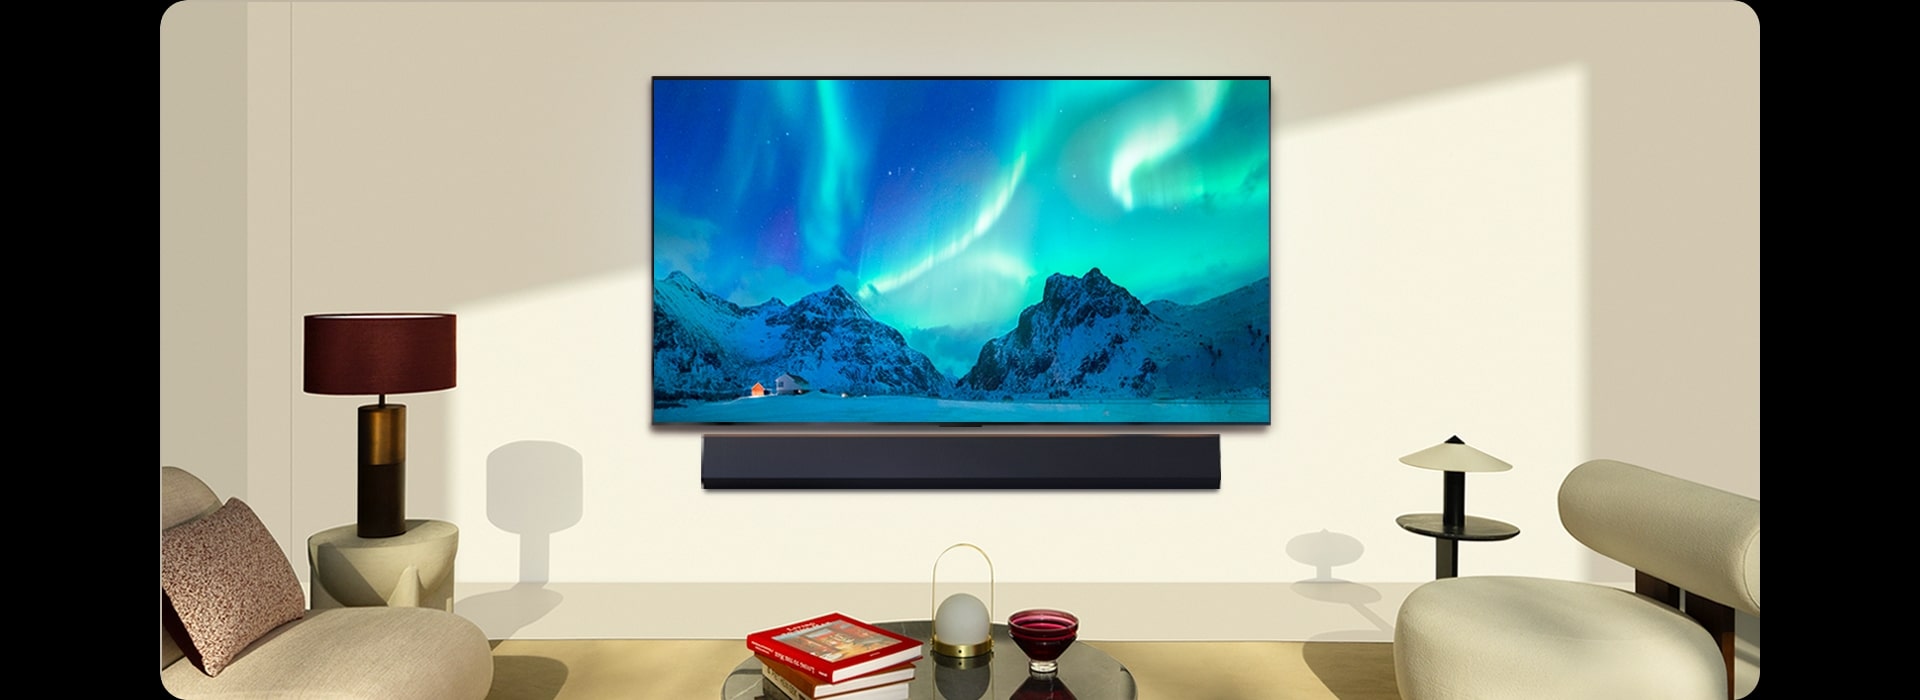 LG OLED TV y LG Soundbar en un espacio moderno durante el día. La imagen en pantalla de la aurora boreal se muestra con los niveles de brillo ideales.